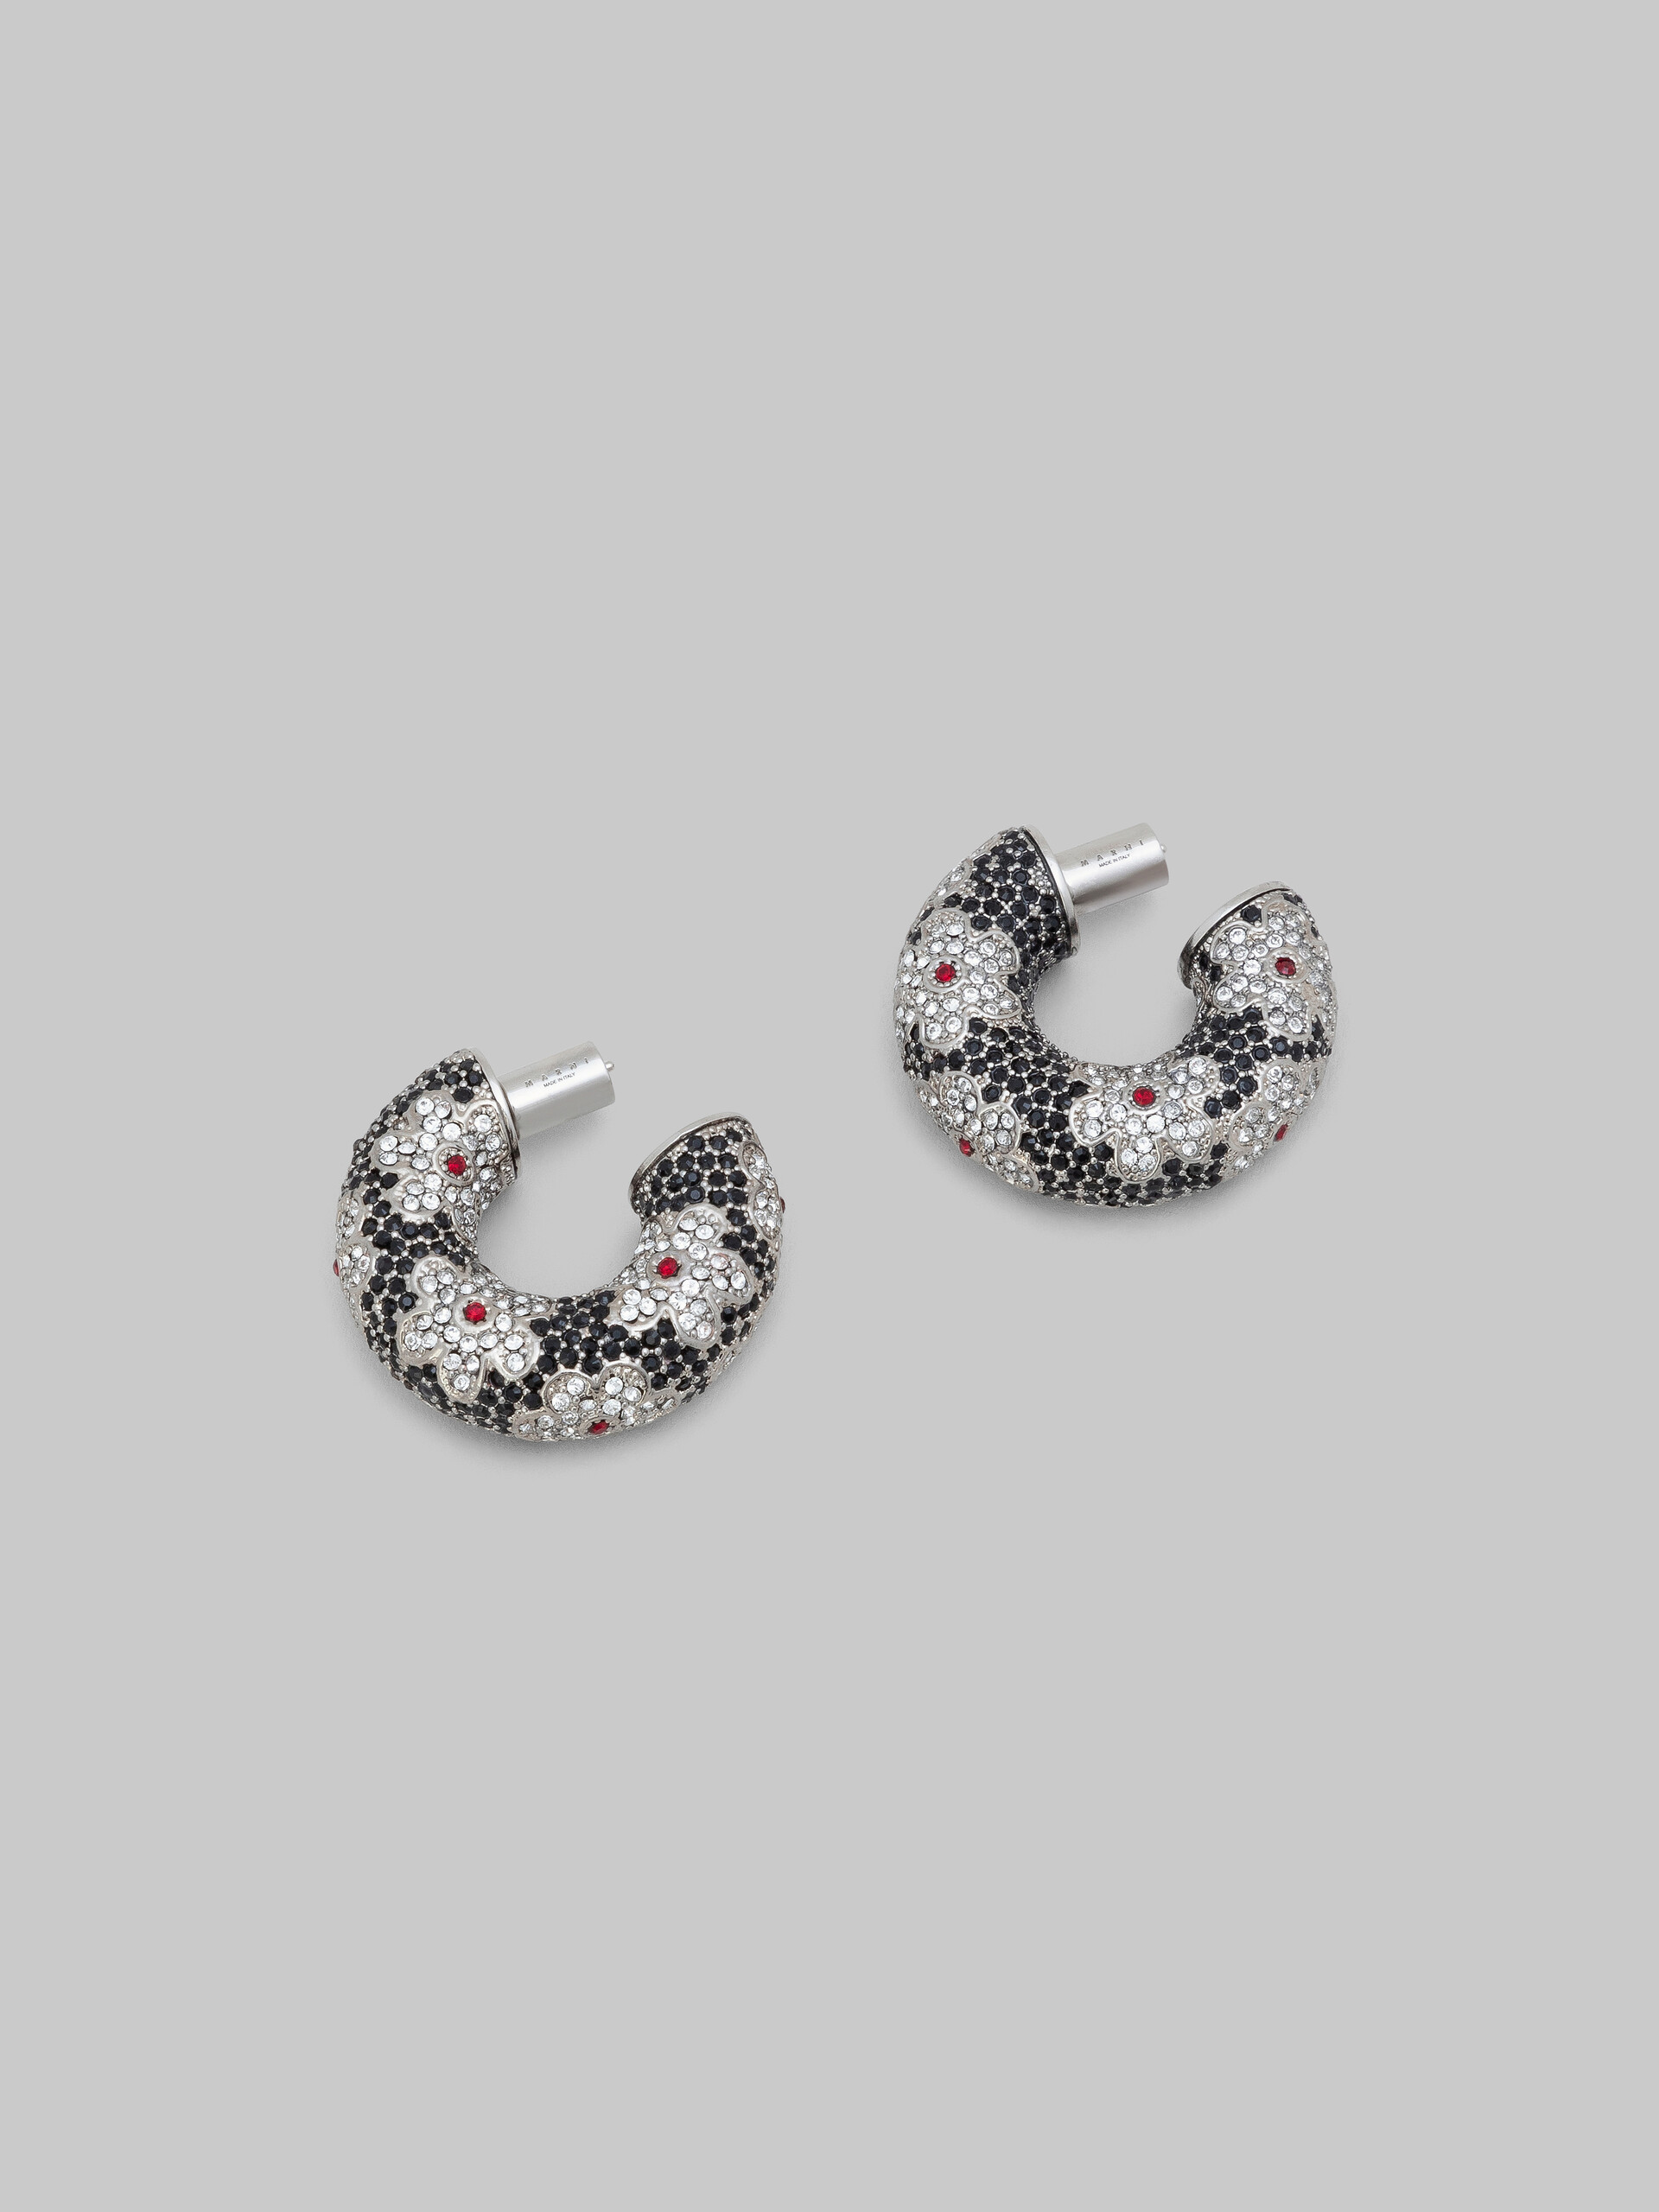 Black tube earrings with rhinstone daisies - Earrings - Image 4